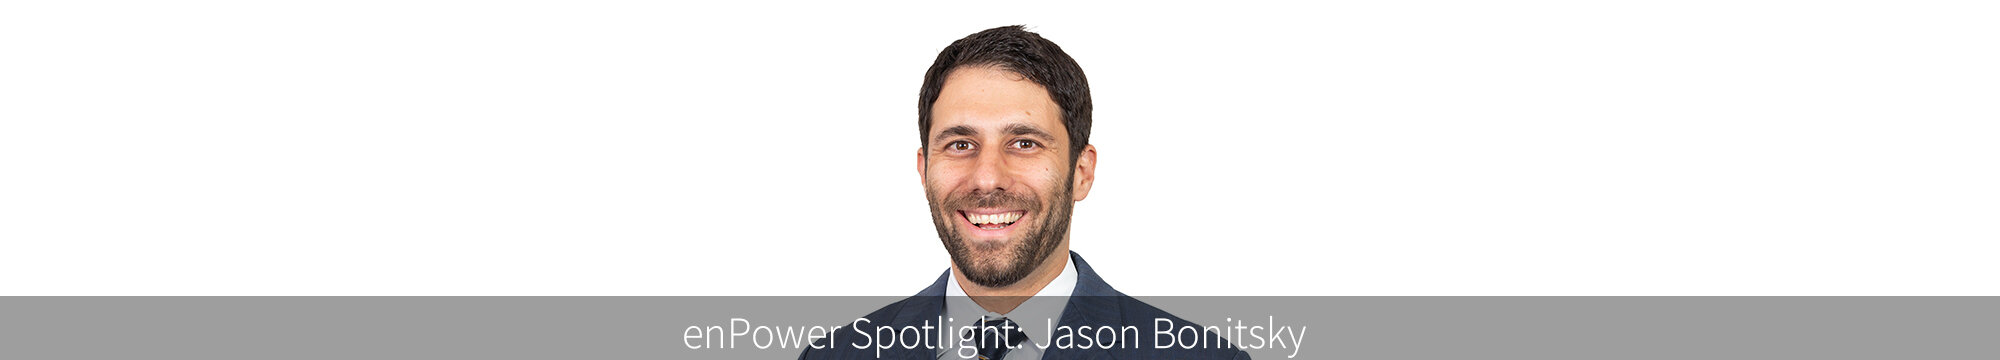 Spotlight #10 Jason Bonitsky, Head of Business Development for enPower · en world